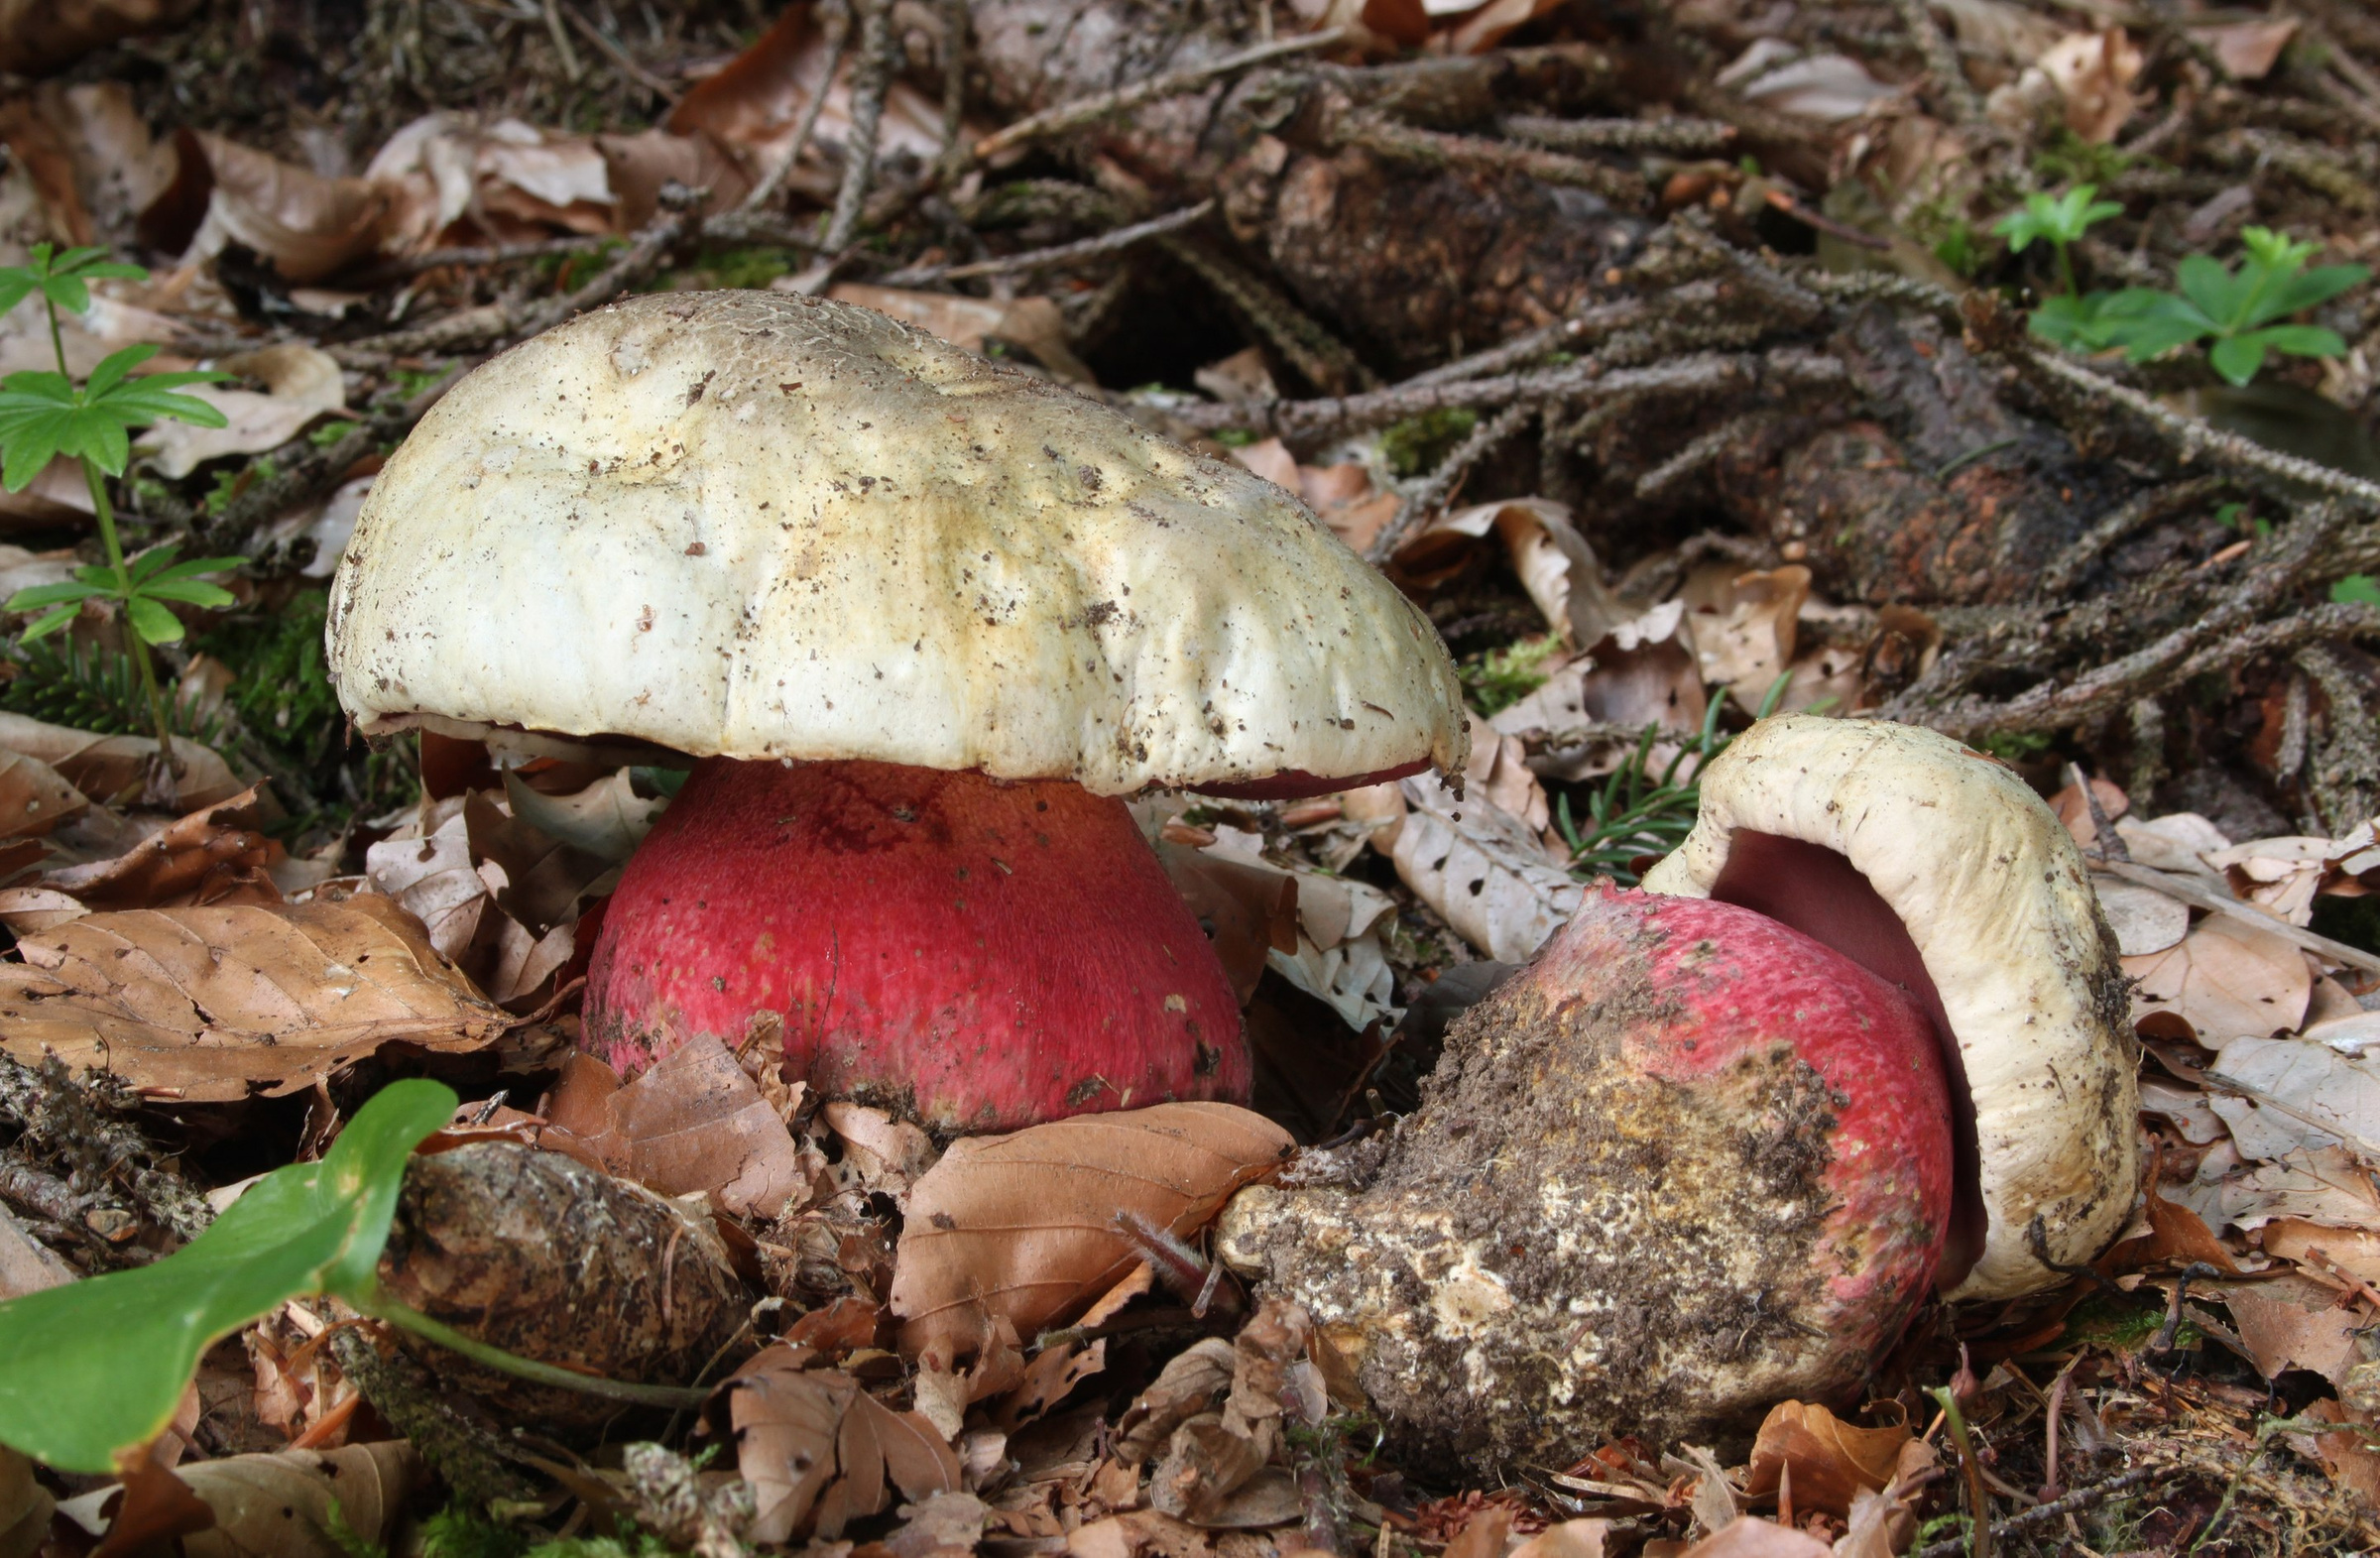 Сатанинский гриб. Напоминает съедобные, но при внимательном осмотре можно выявить отличительные особенности. Например, красная ножка. Фото © Wikipedia / Holger Krisp